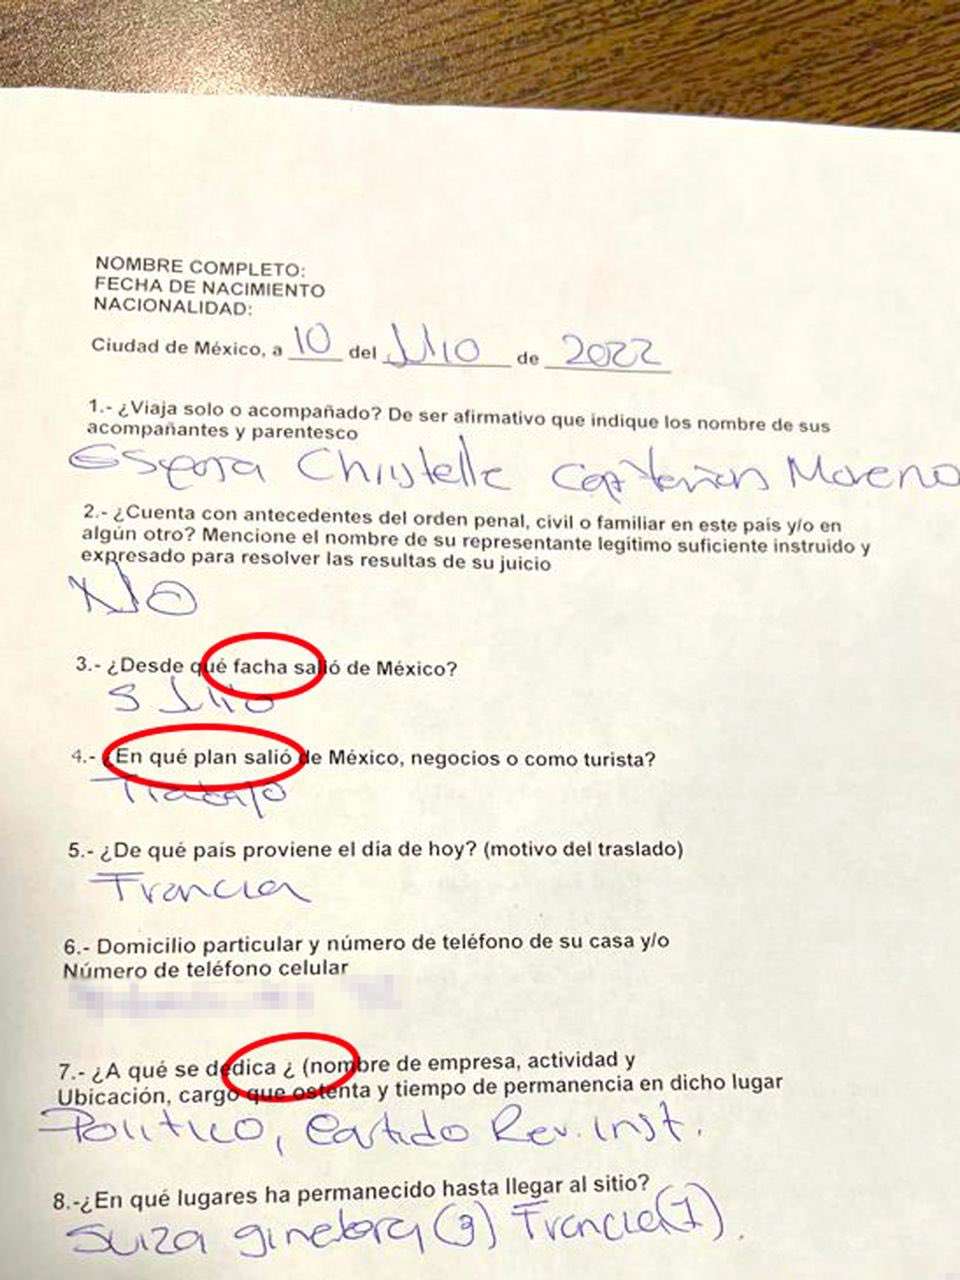 Documento ’irregular’ que hicieron llenar a Moreno Cárdenas.